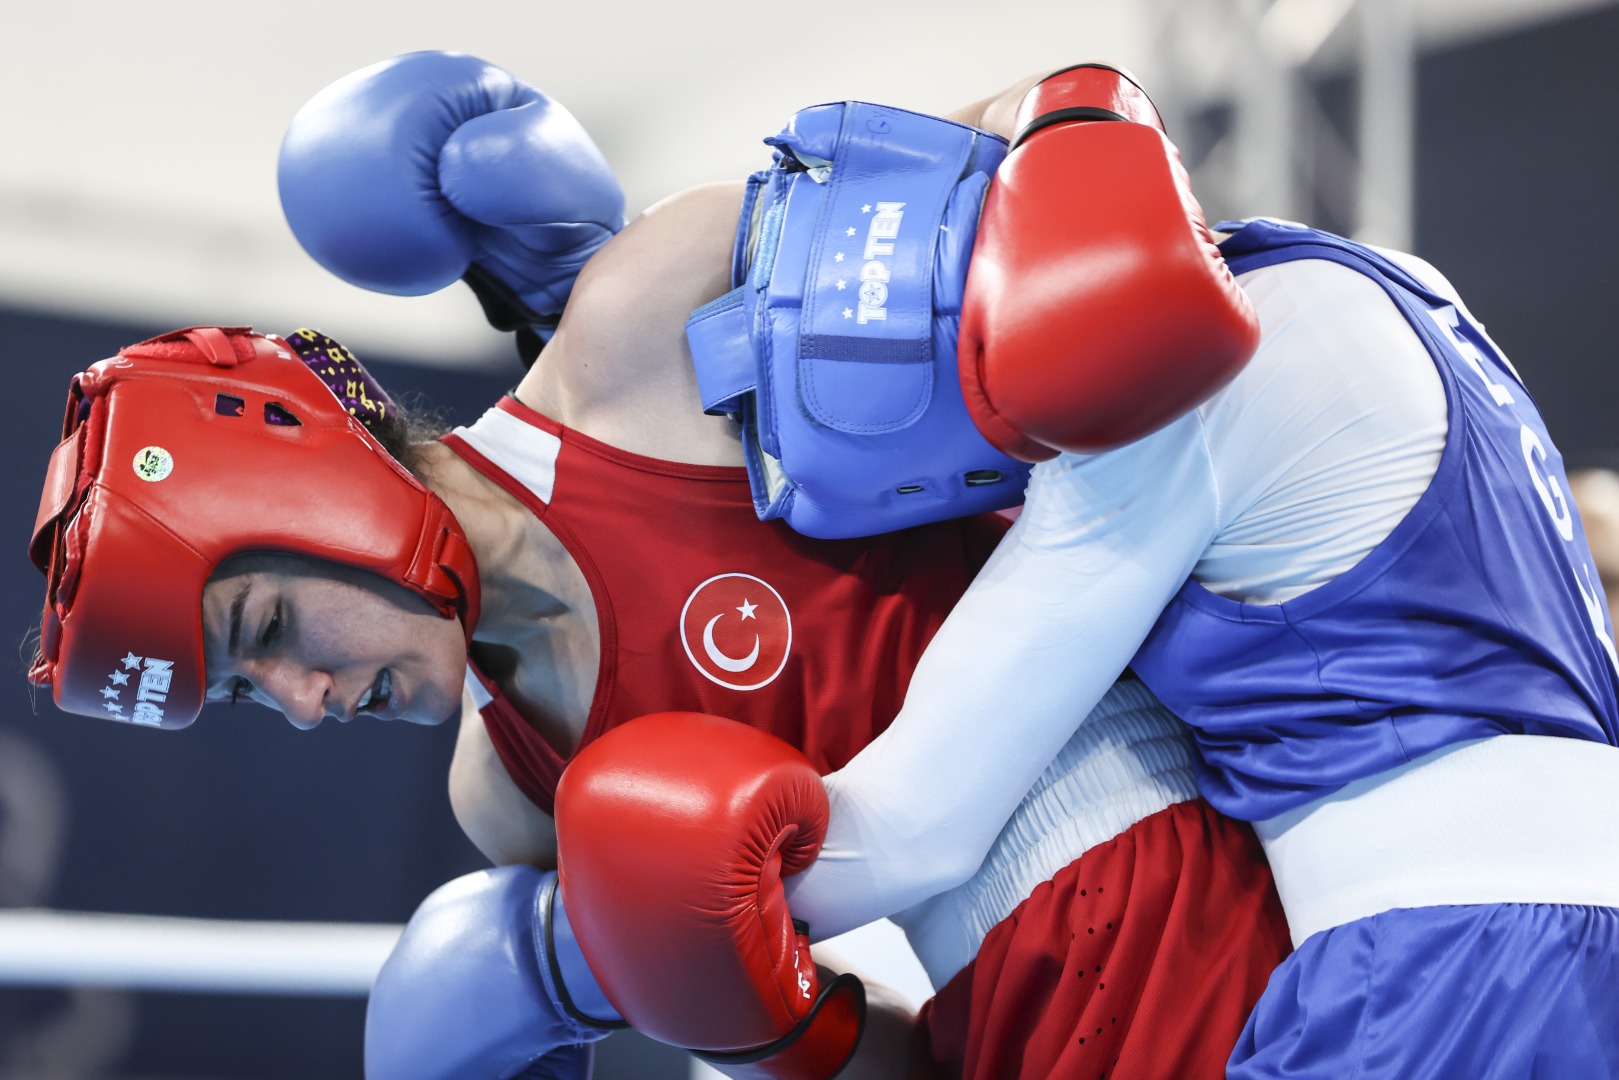 Milli boksör Hatice Akbaş Mısırlı rakibini devirdi